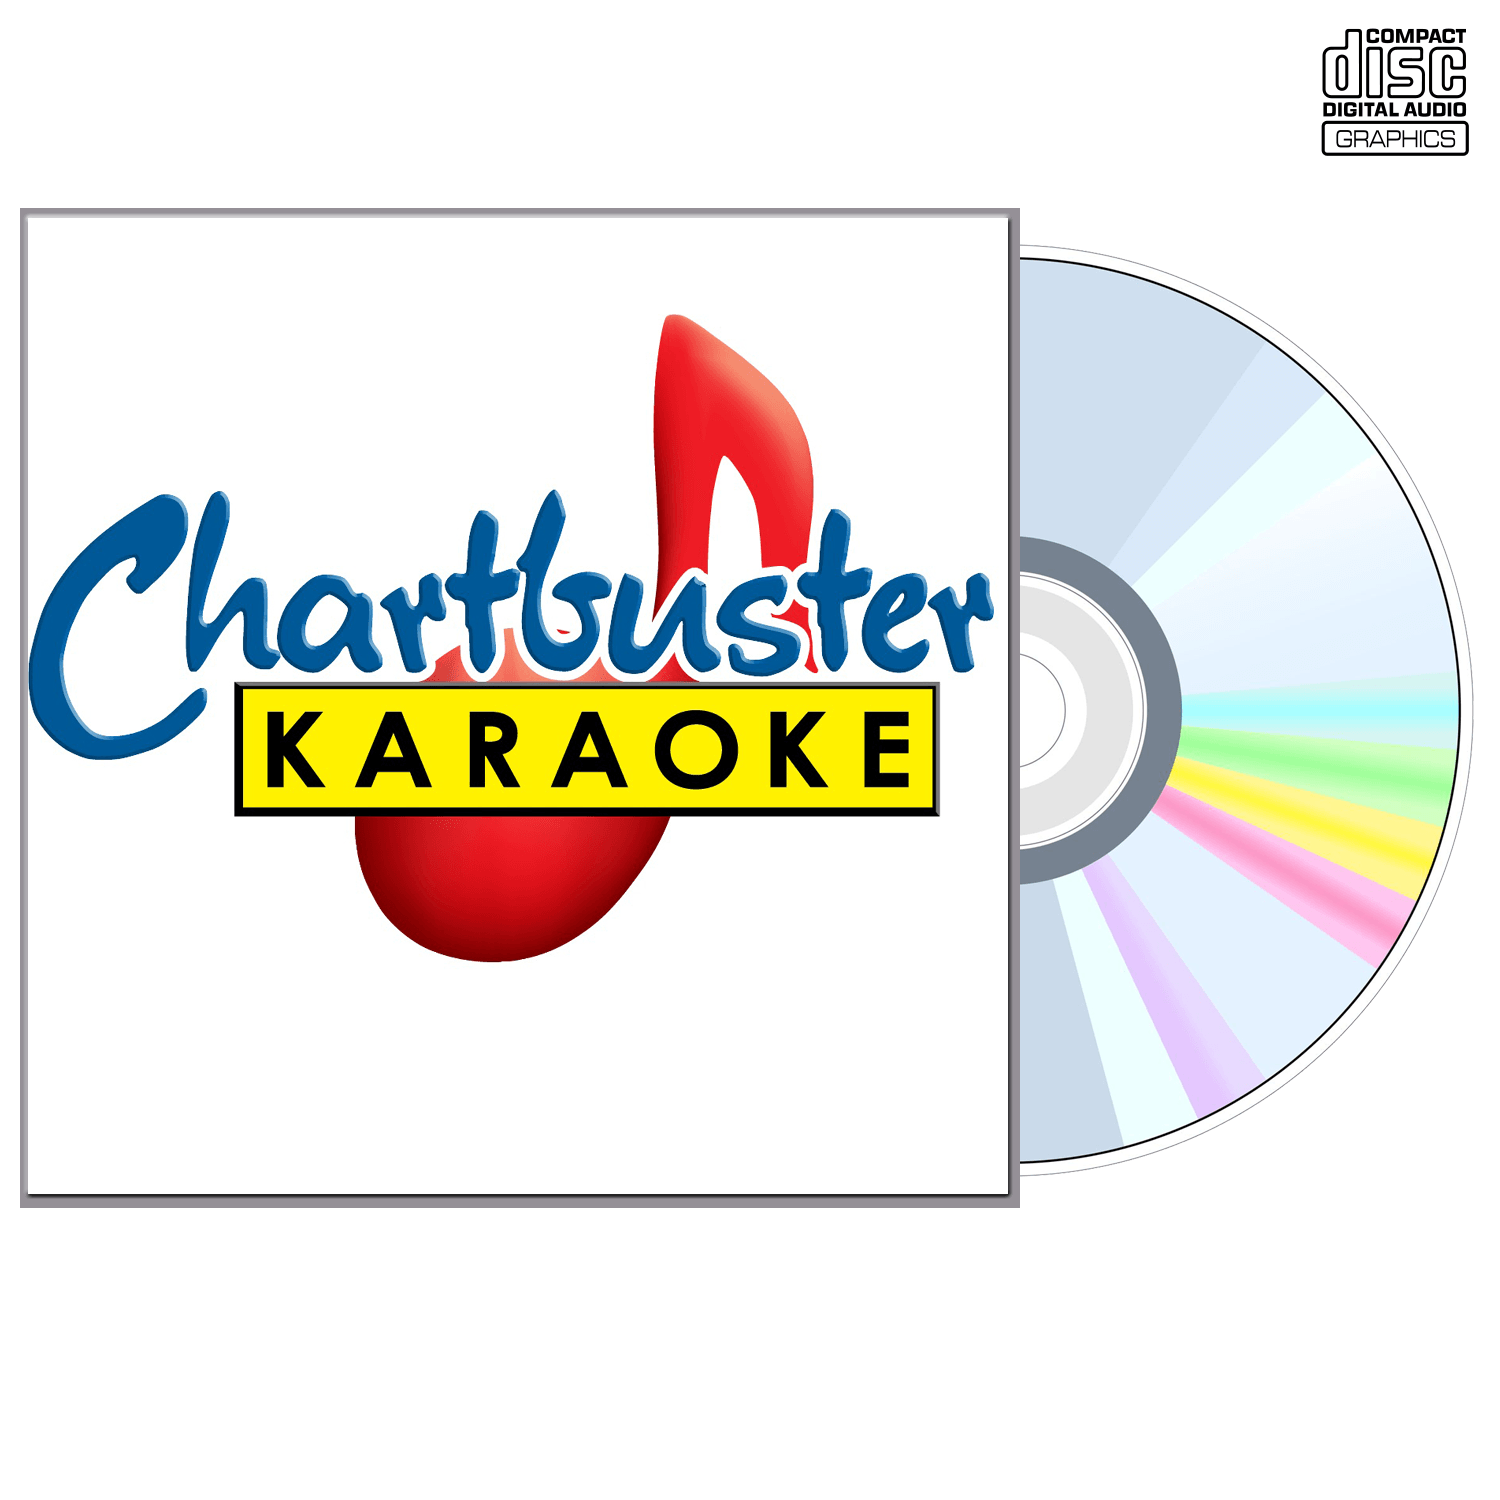 Mark Mcguinn - CD+G - Chartbuster Karaoke - Karaoke Home Entertainment